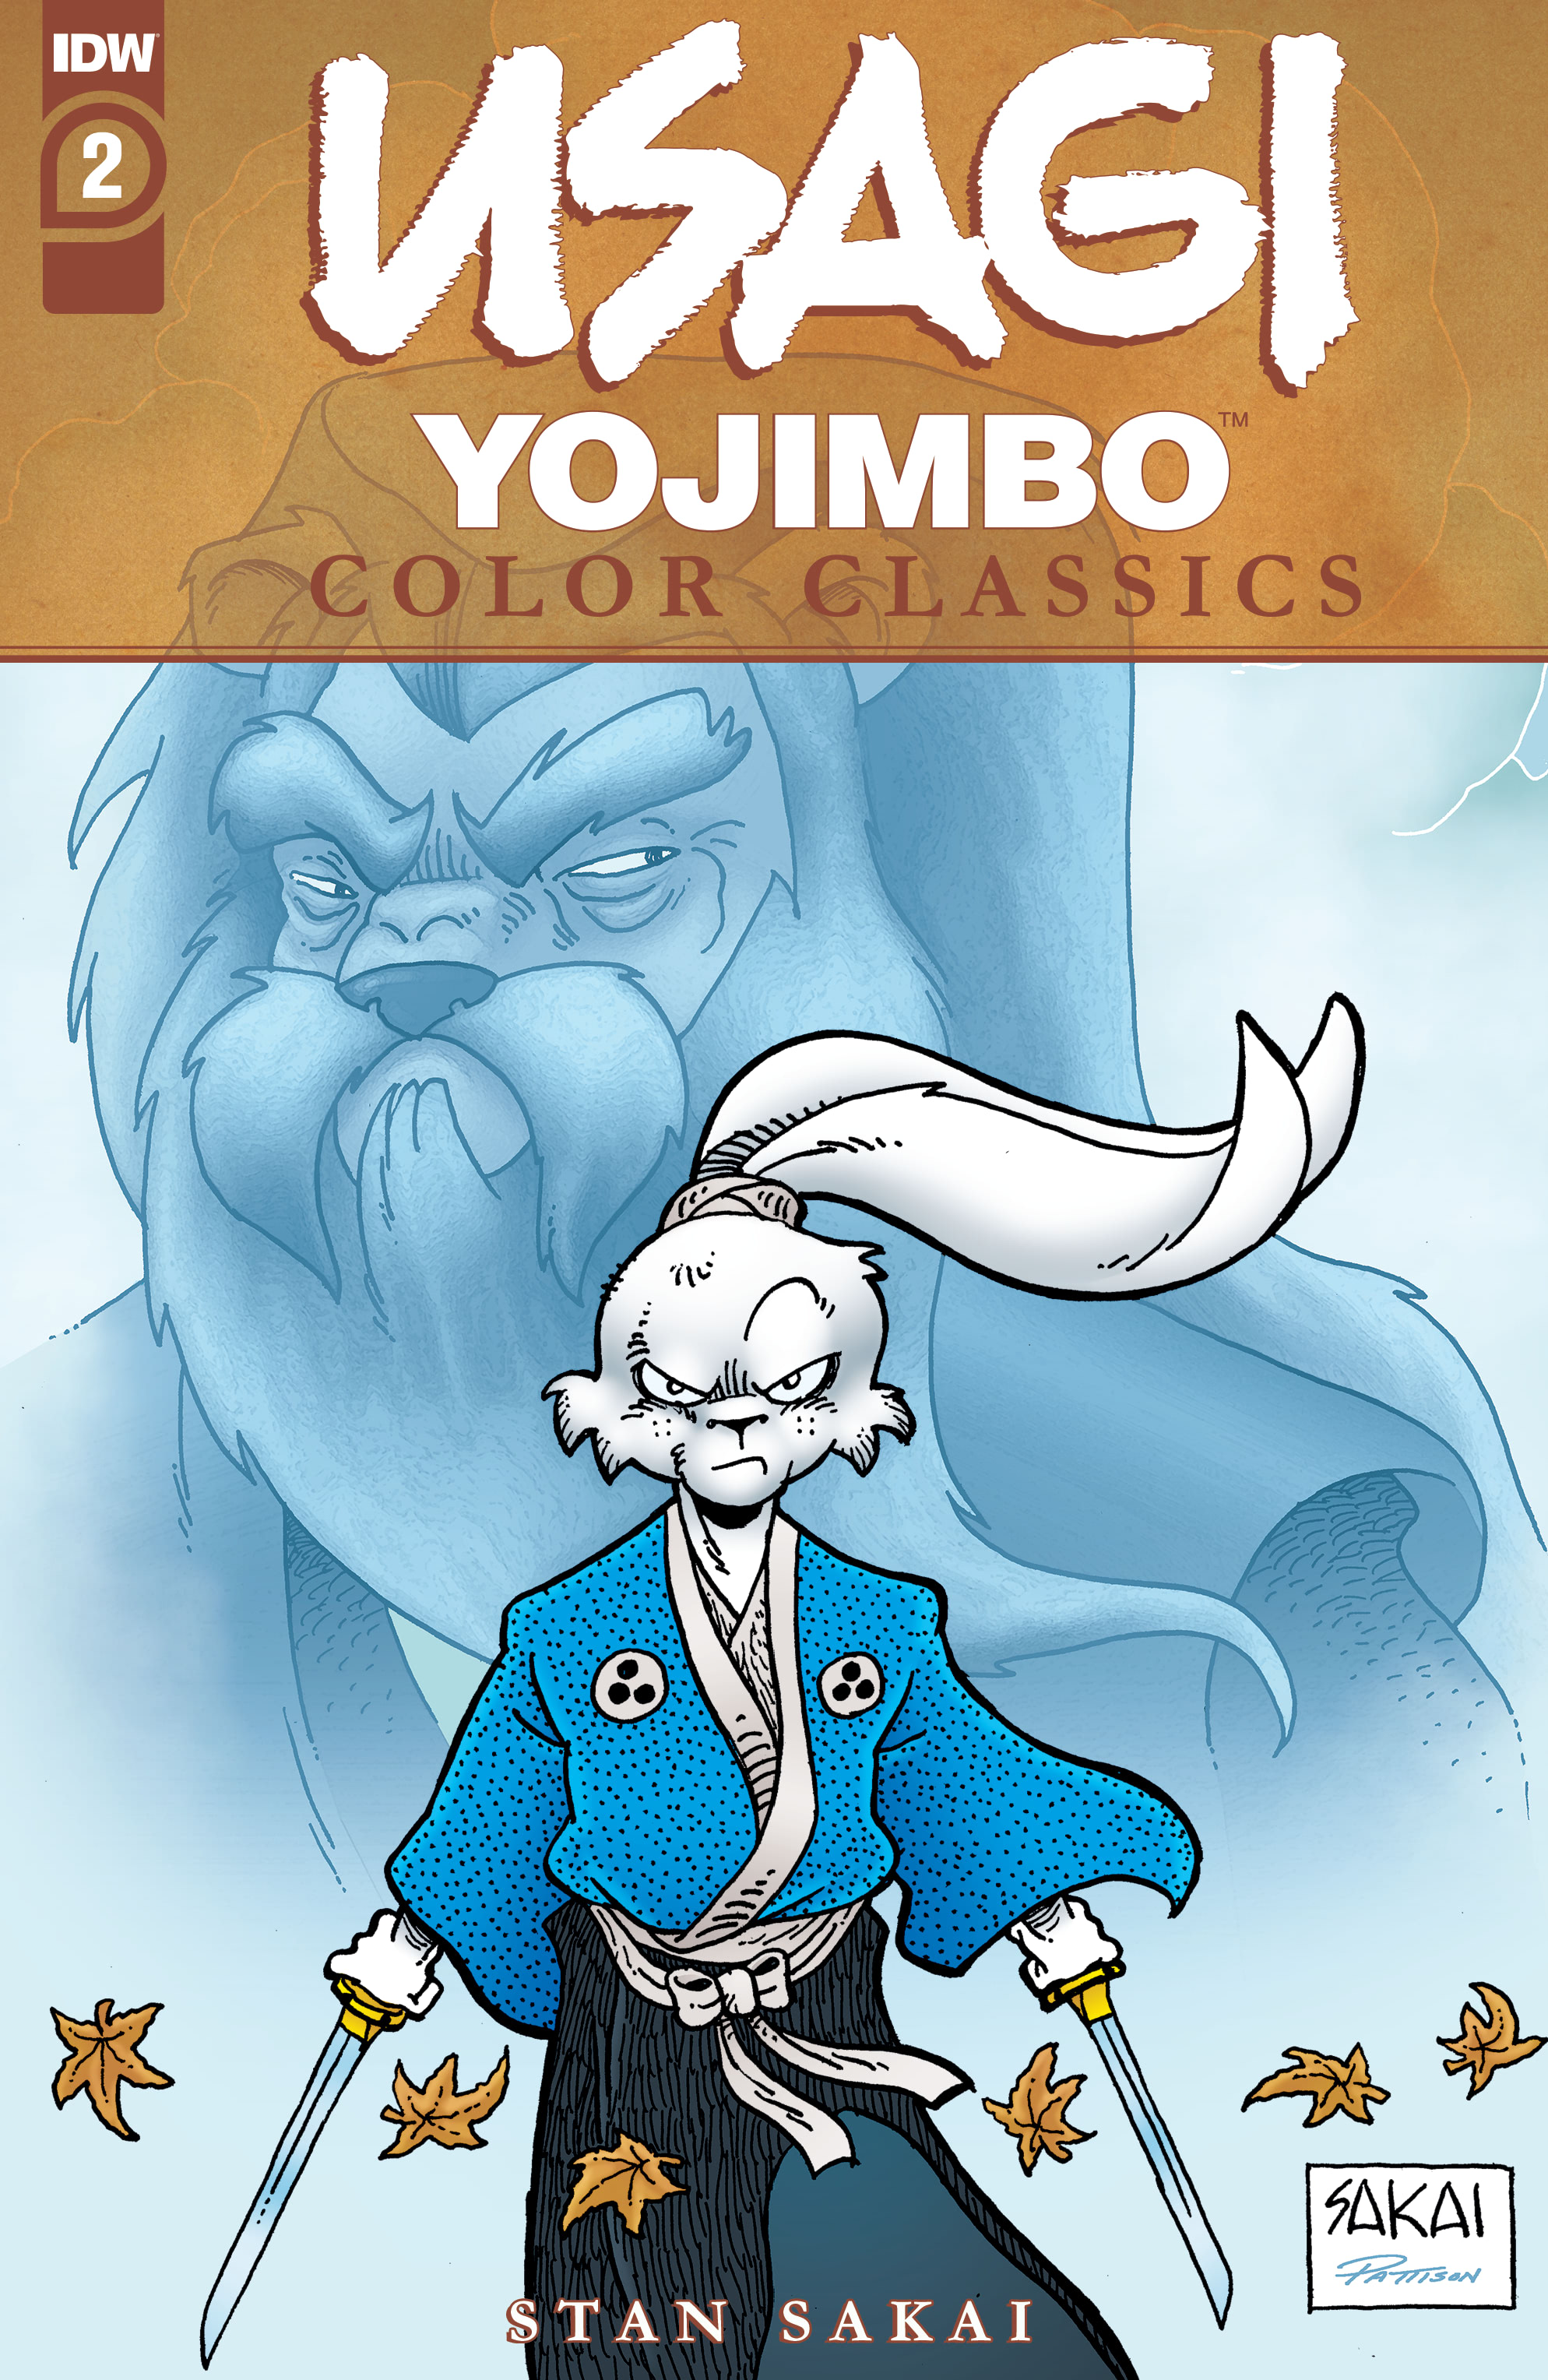 Usagi yojimbo read online